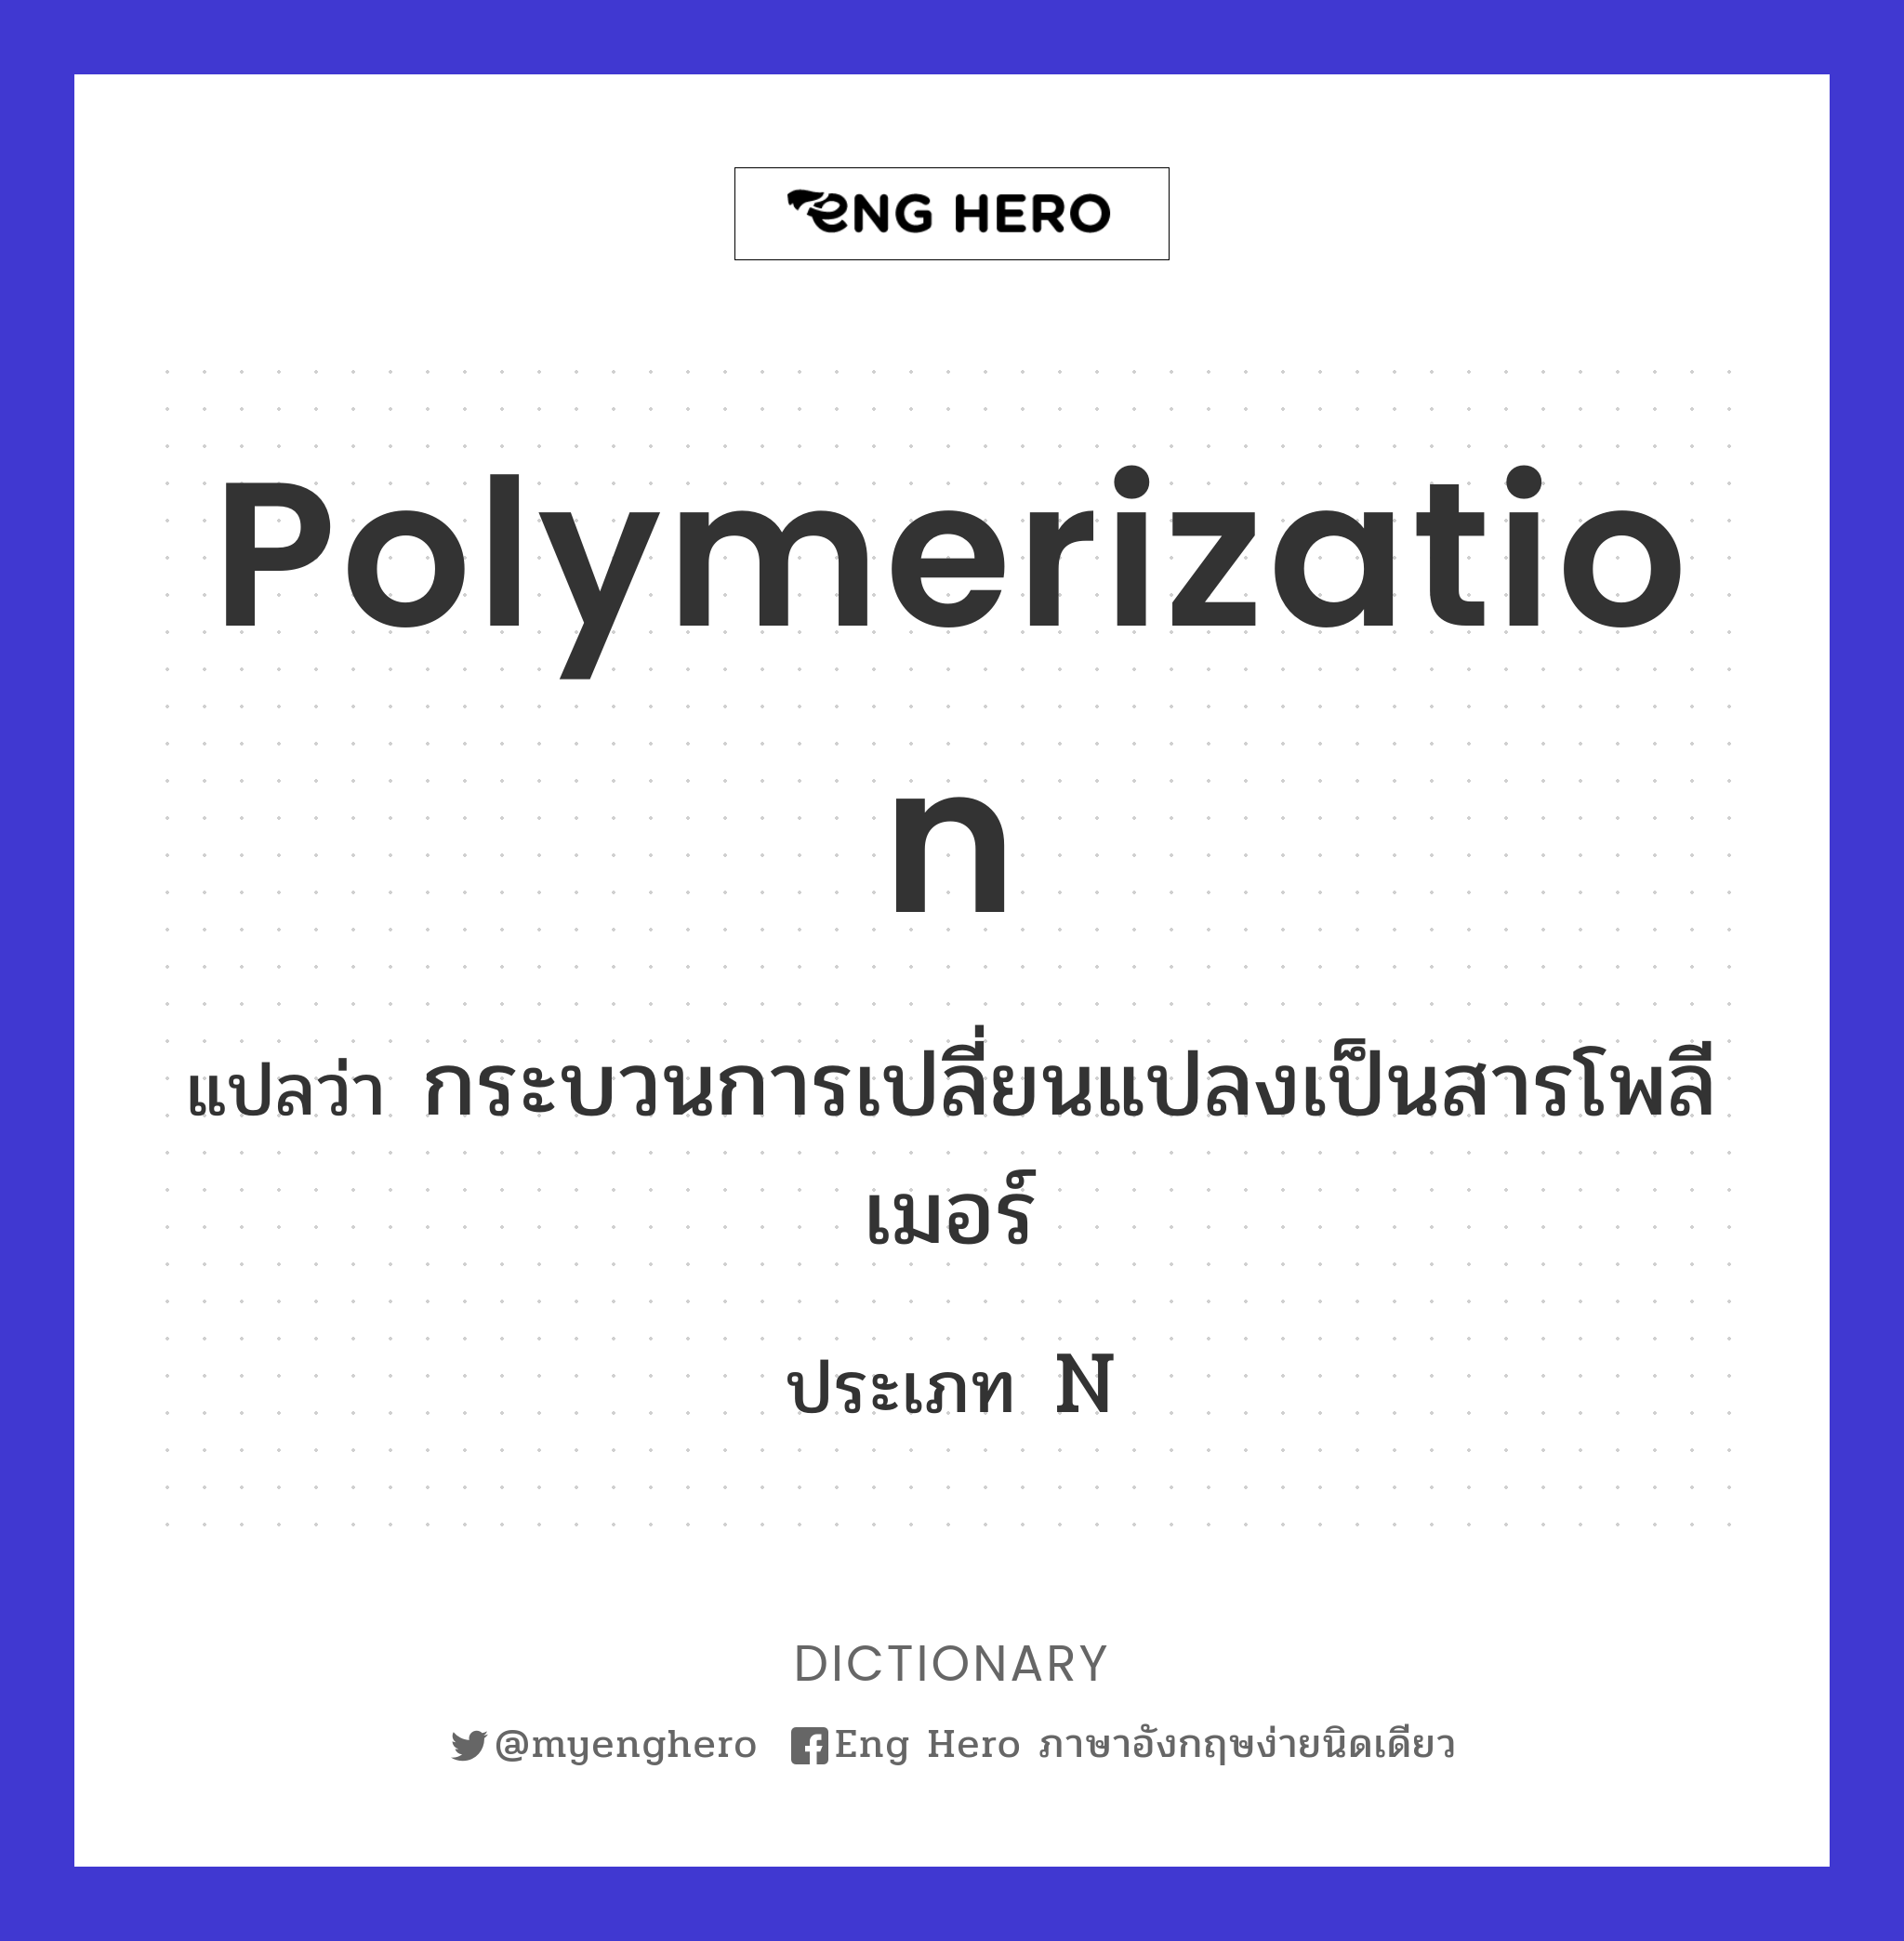 polymerization